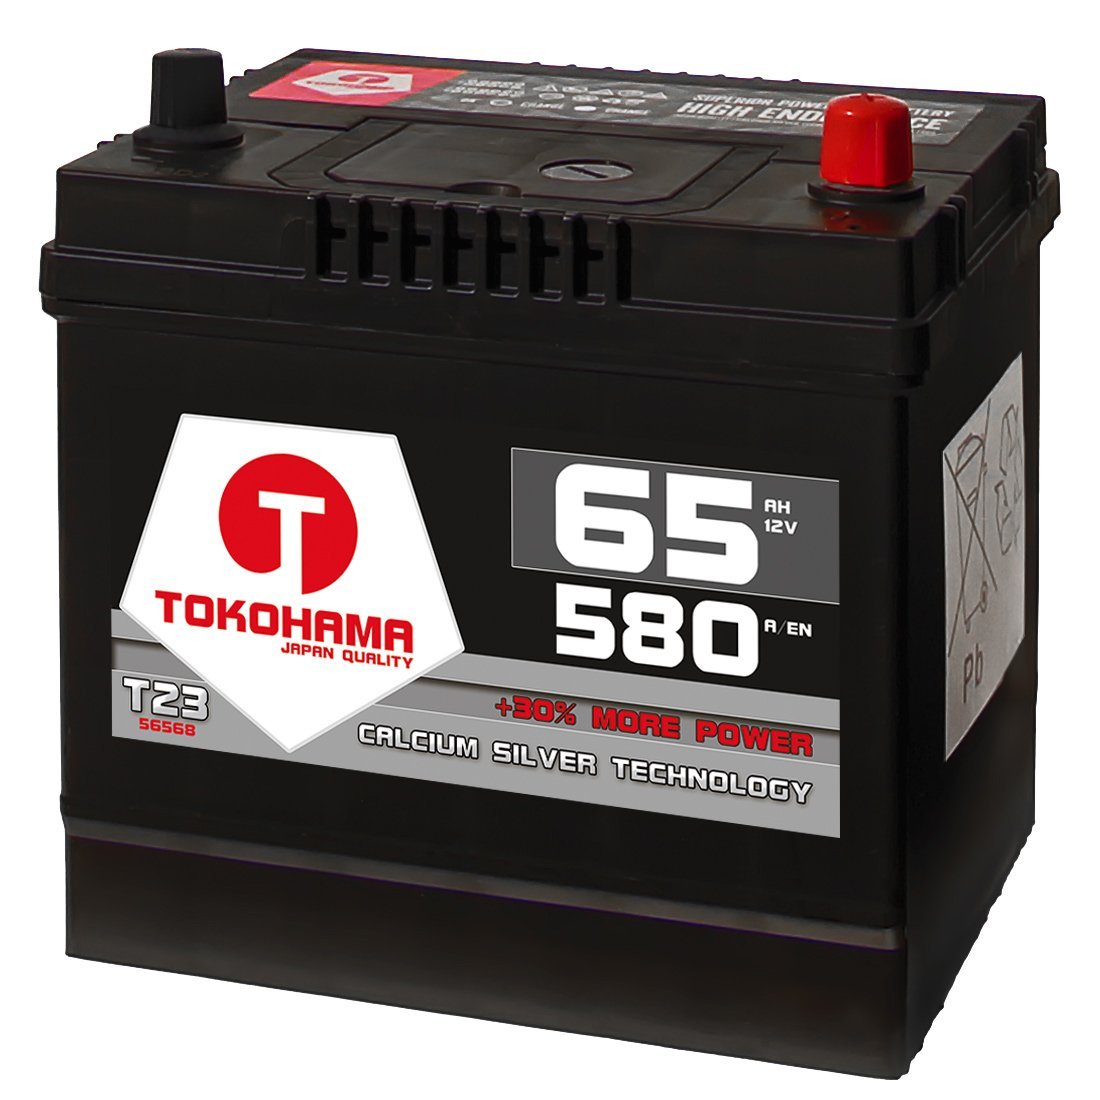 Tokohama Autobatterie 65Ah 580A/EN Asia Japan Starter Batterie Plus Pol Rechts ersetzt 60Ah 12V 56068